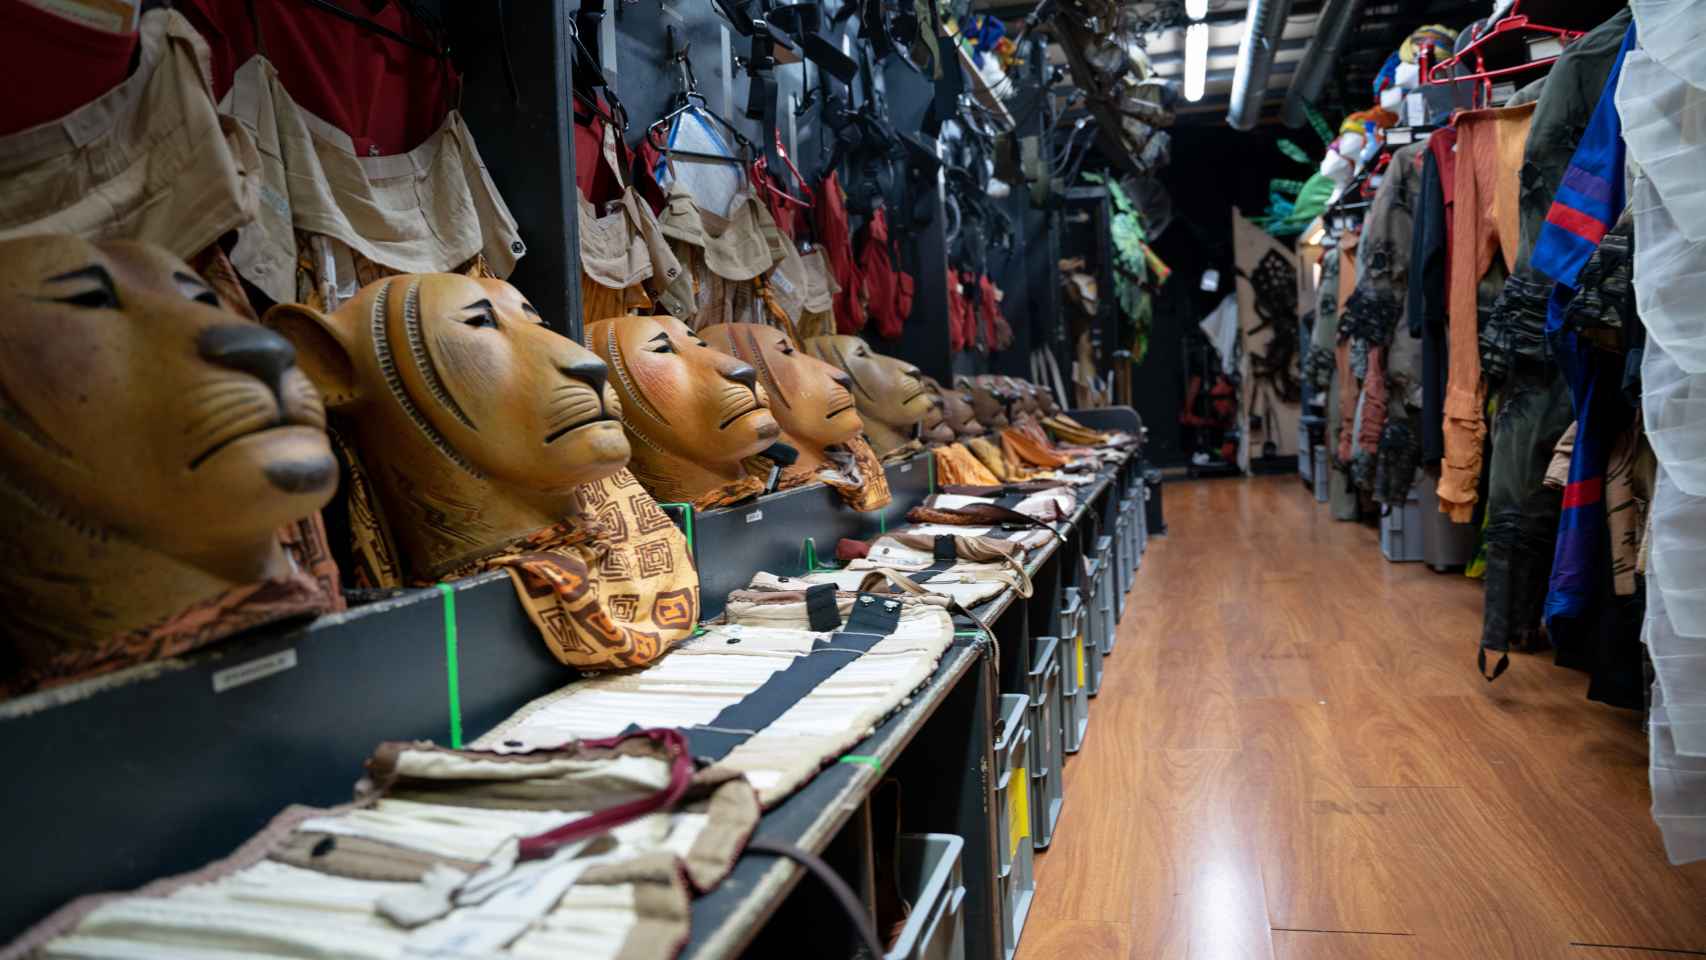 Las máscaras y los disfraces usados por los artistas de 'El Rey León' perfectamente ordenados y listos para su uso.